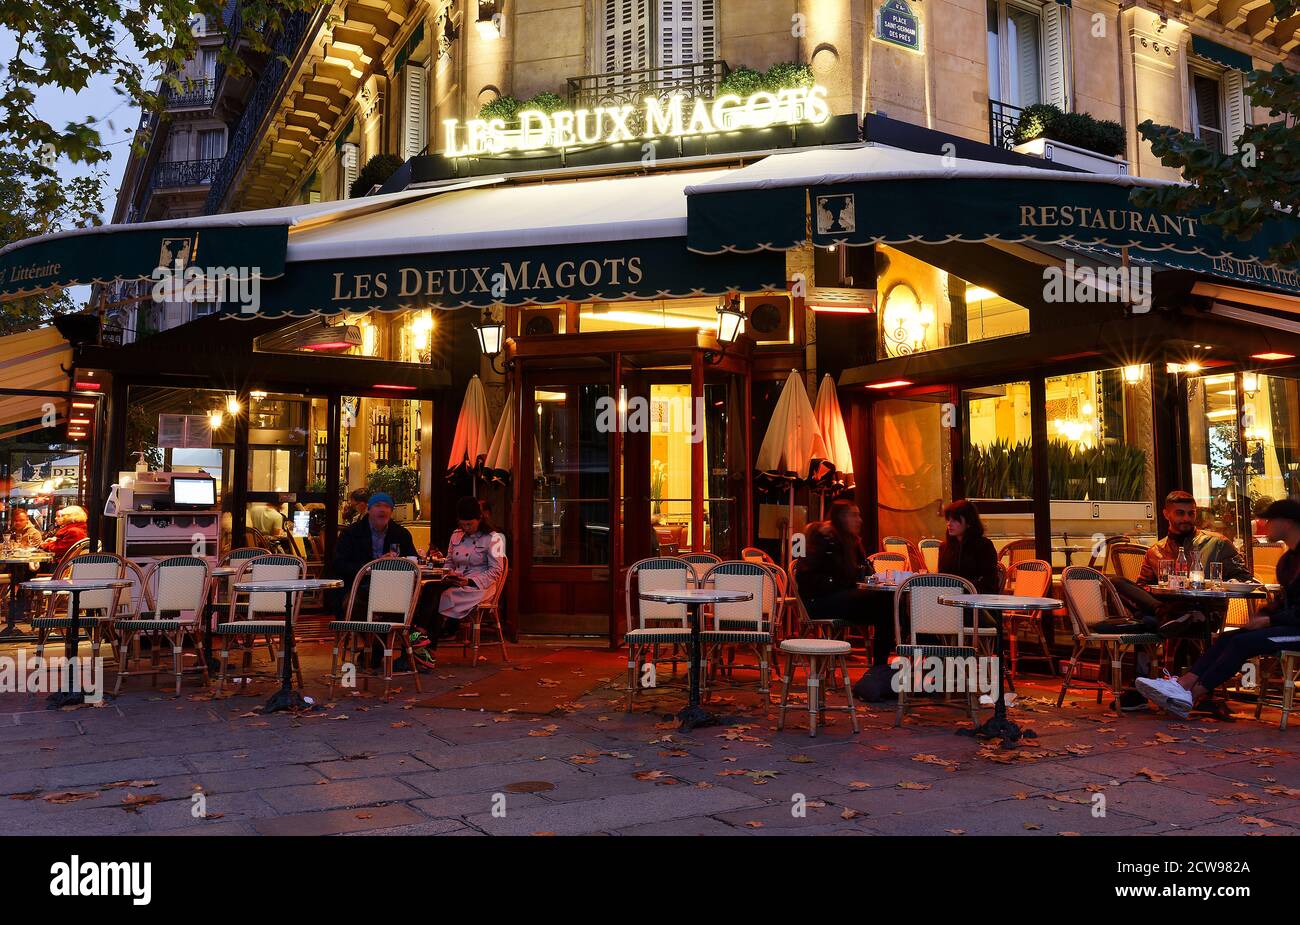 The famous cafe Les deux magots located on Saint-Germain boulevard .It ...